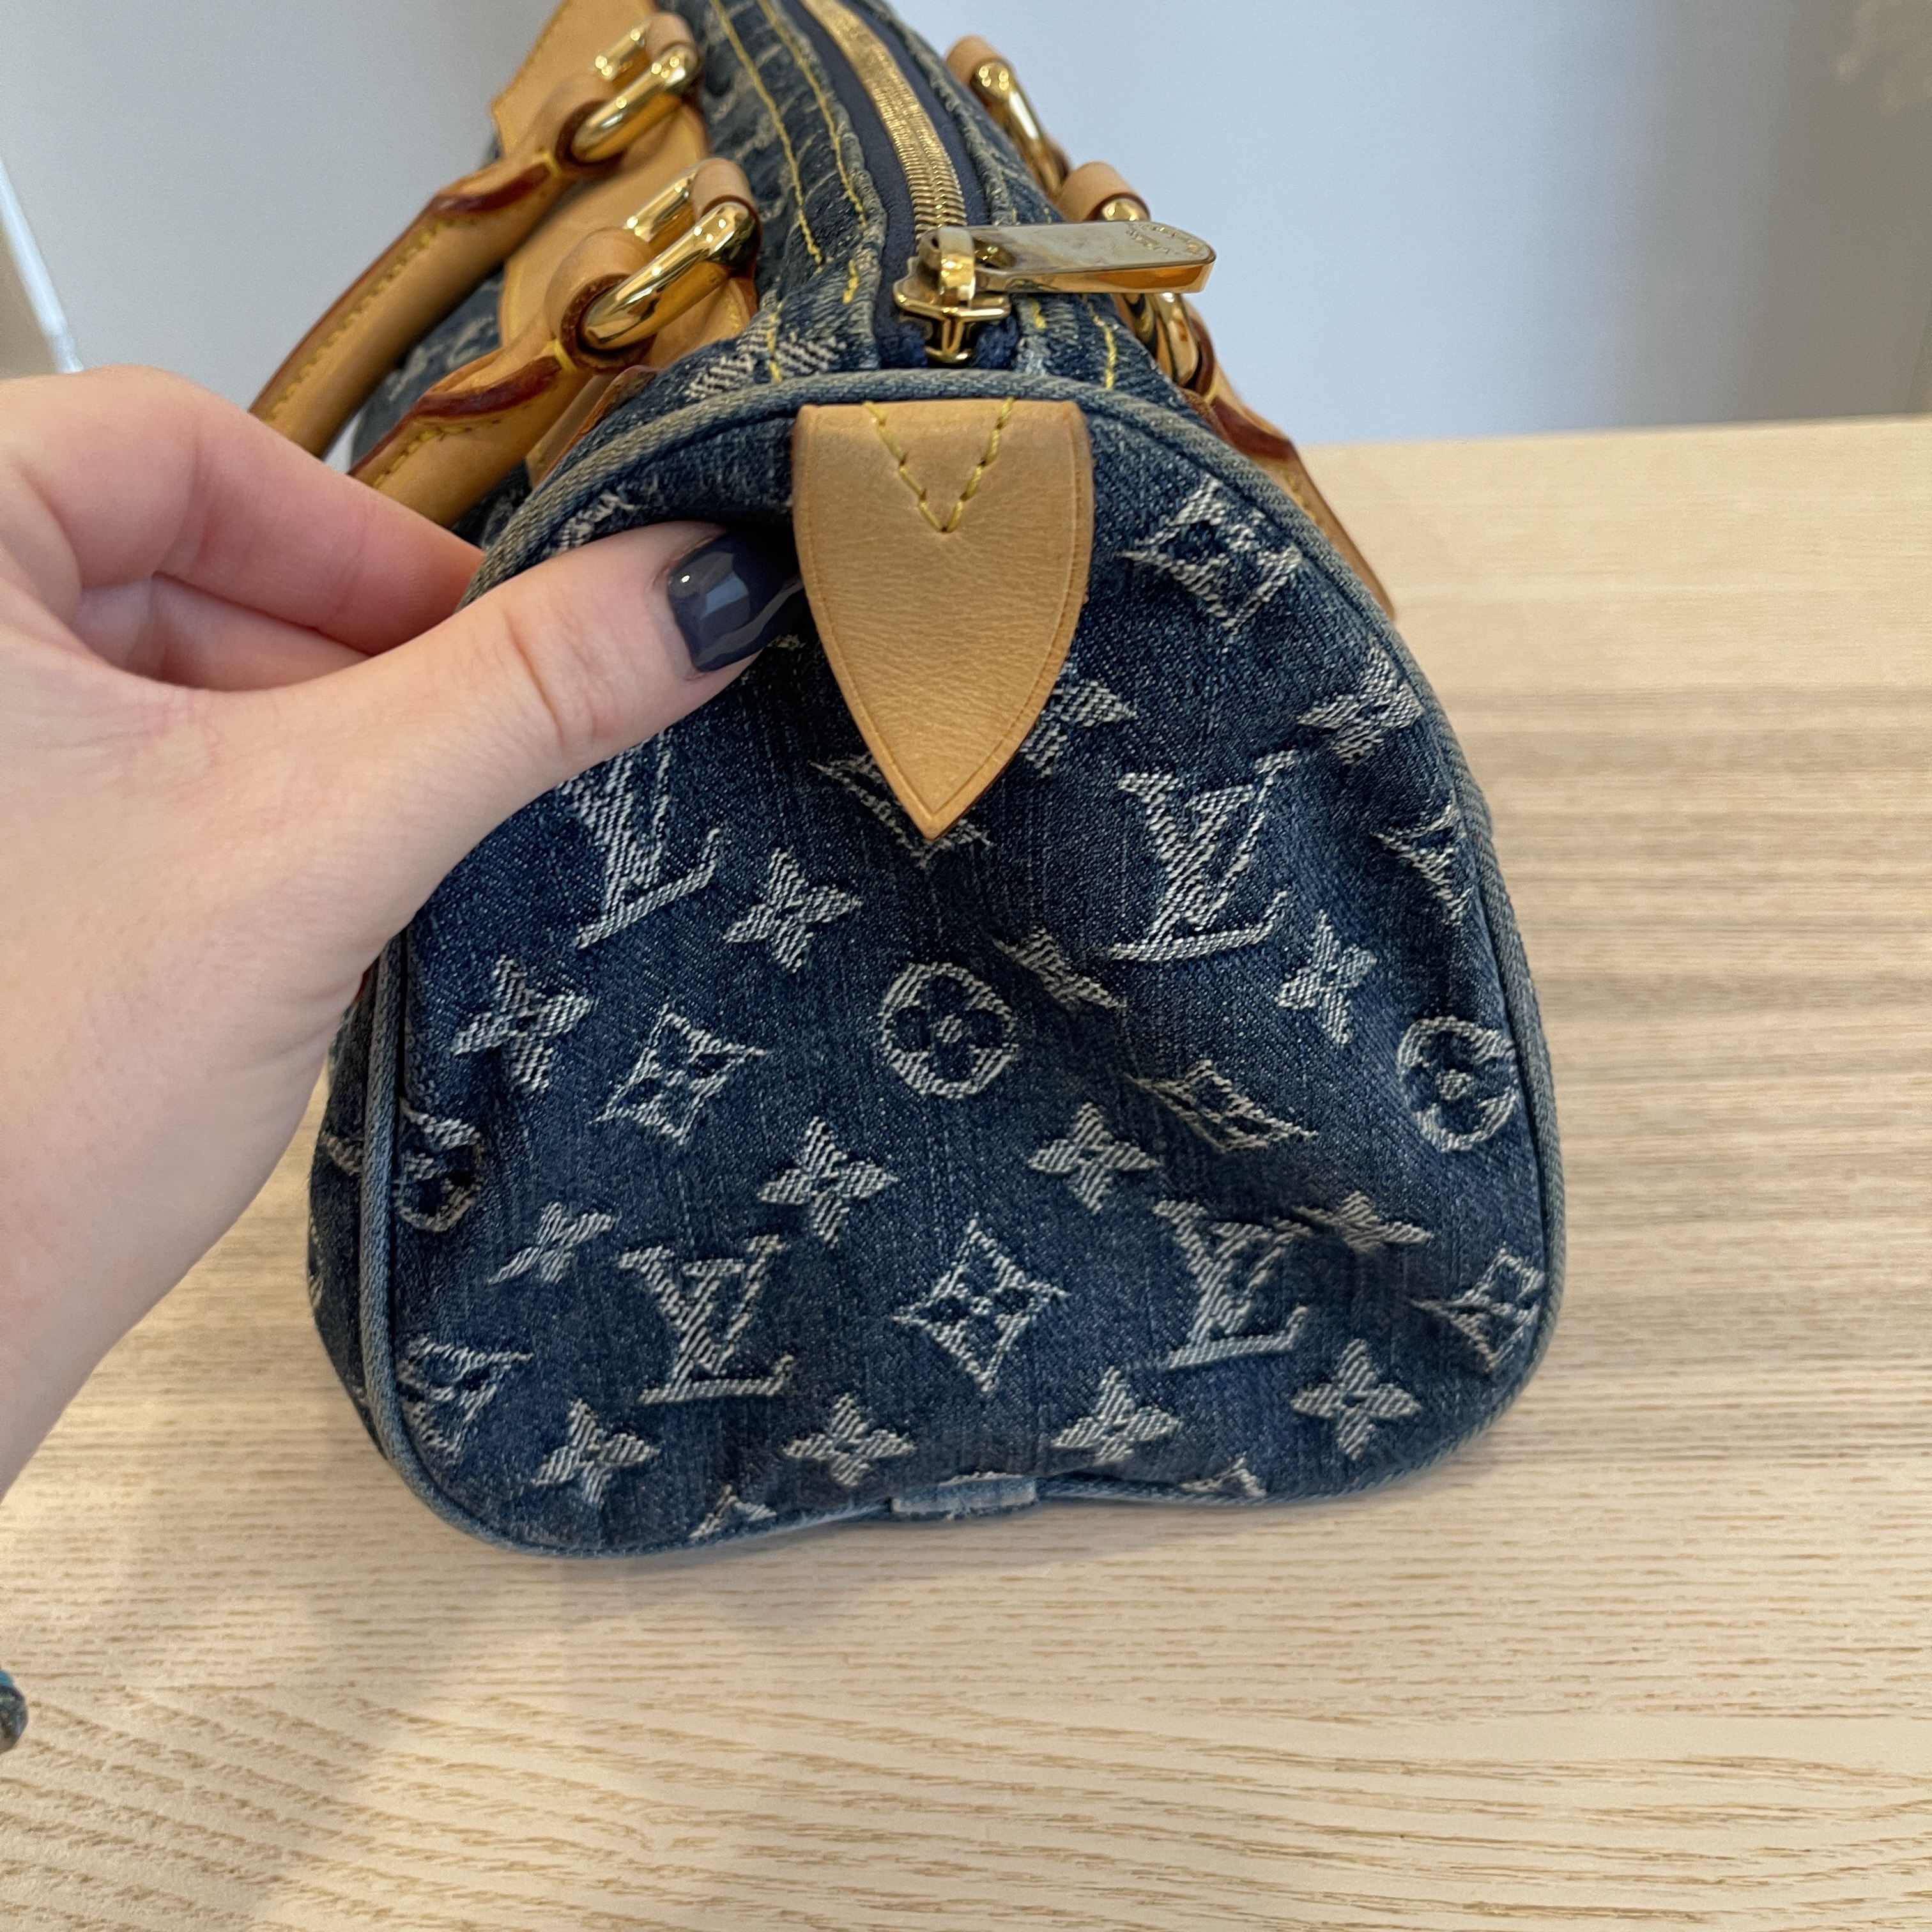 Auth Louis Vuitton Monogram Denim Neo Speedy M95019 Women's Handbag Blue